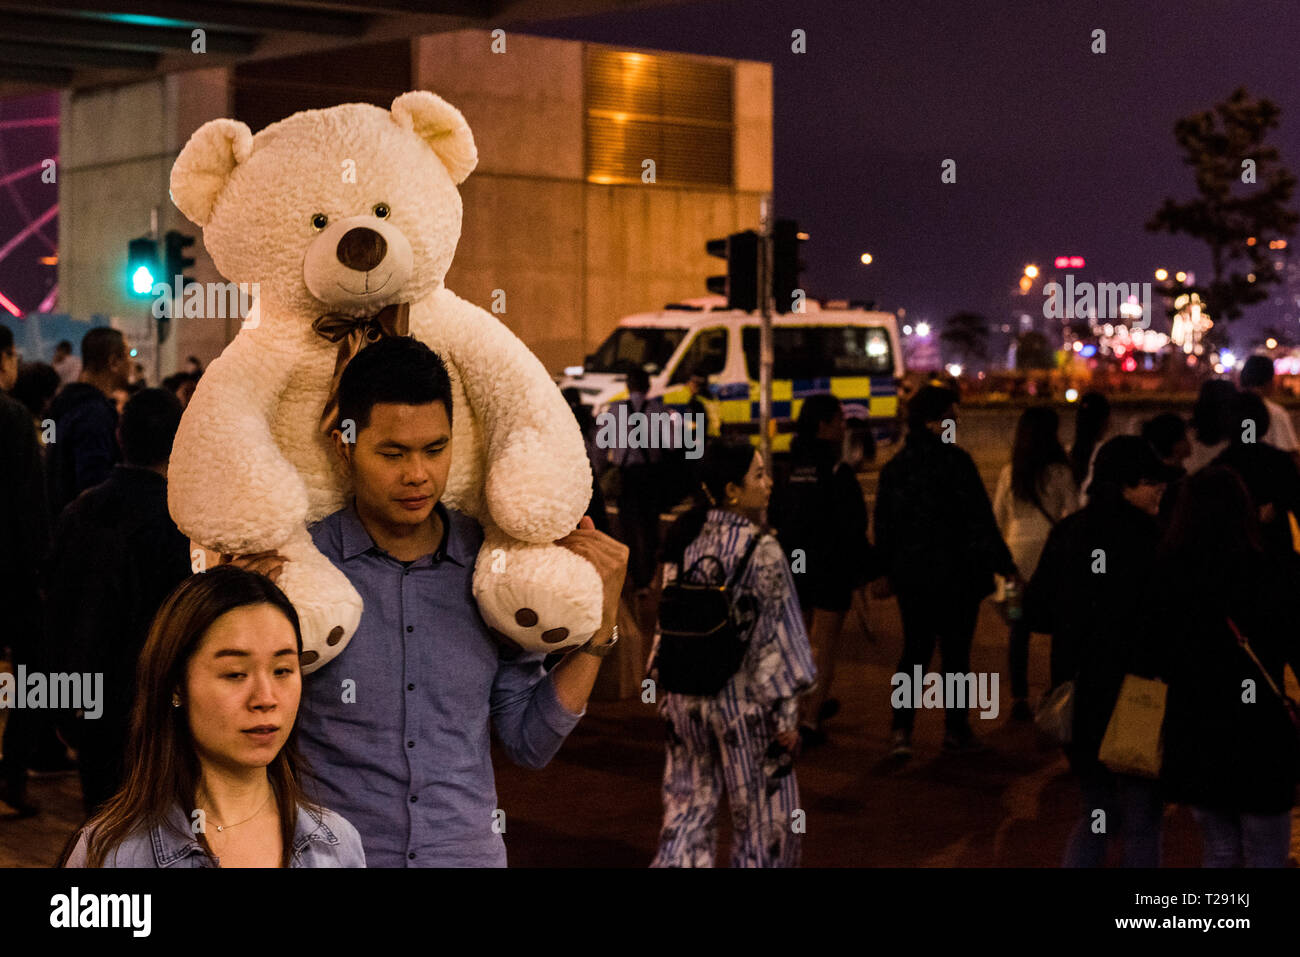 Mann, der riesige Teddybären auf den Schultern, und die Straße mit Menschen gefüllt, während das chinesische Neujahr feiern, Kowloon, Hong Kong Stockfoto